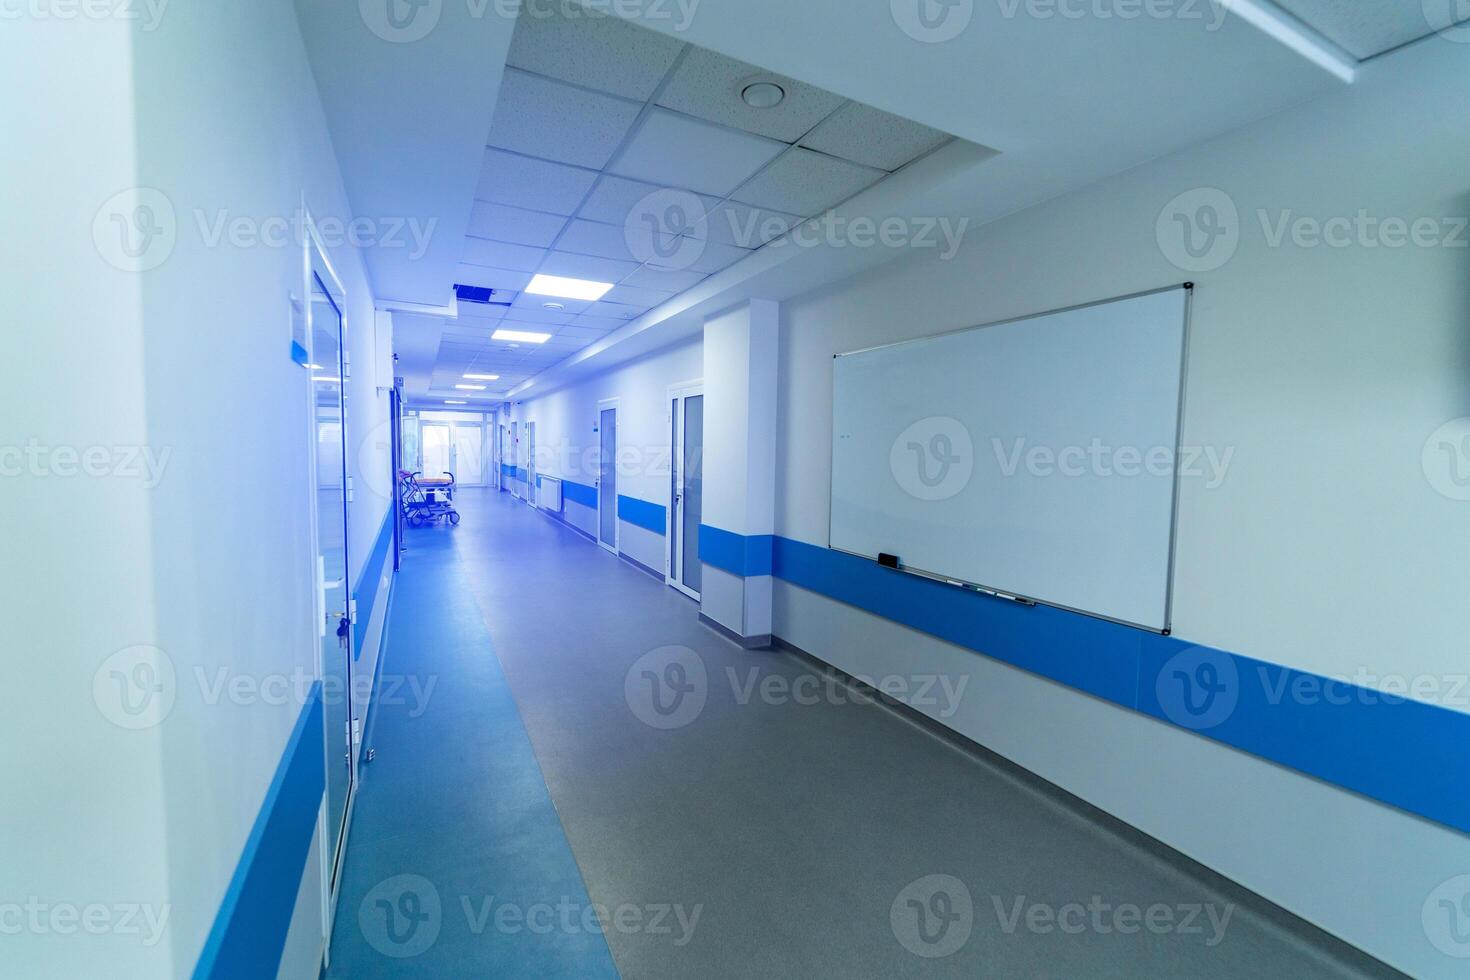 lång sjukhus hall i ljus vit och blå färger. många dörrar och whiteboard på vägg. foto